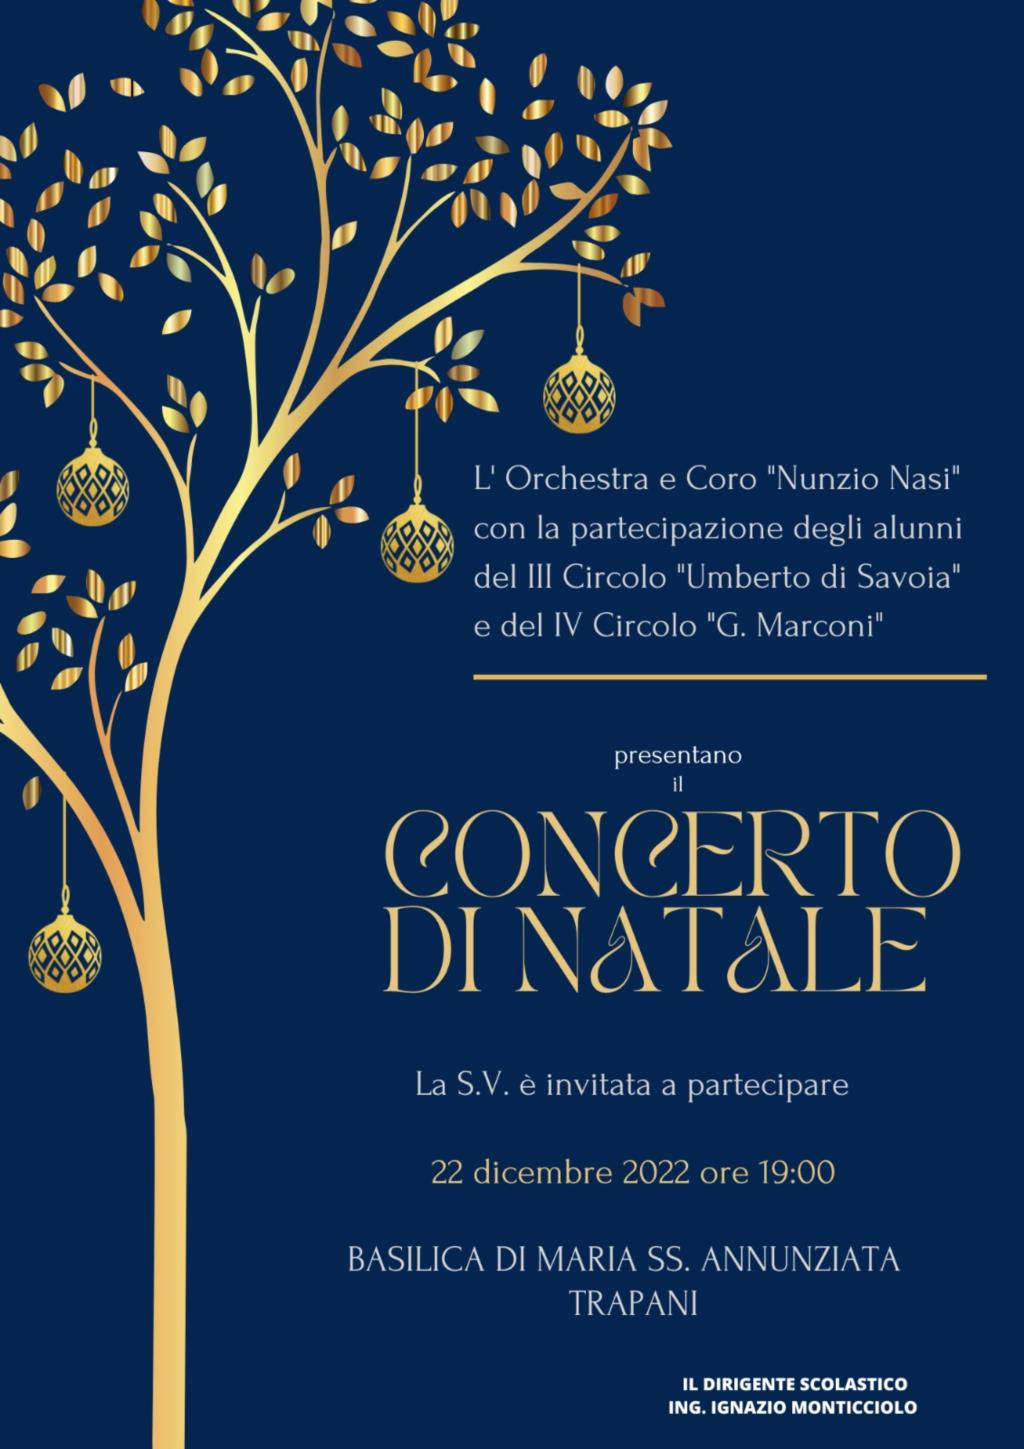 Trapani, concerto di Natale degli alunni dell'I.C. Nunzio Nasi